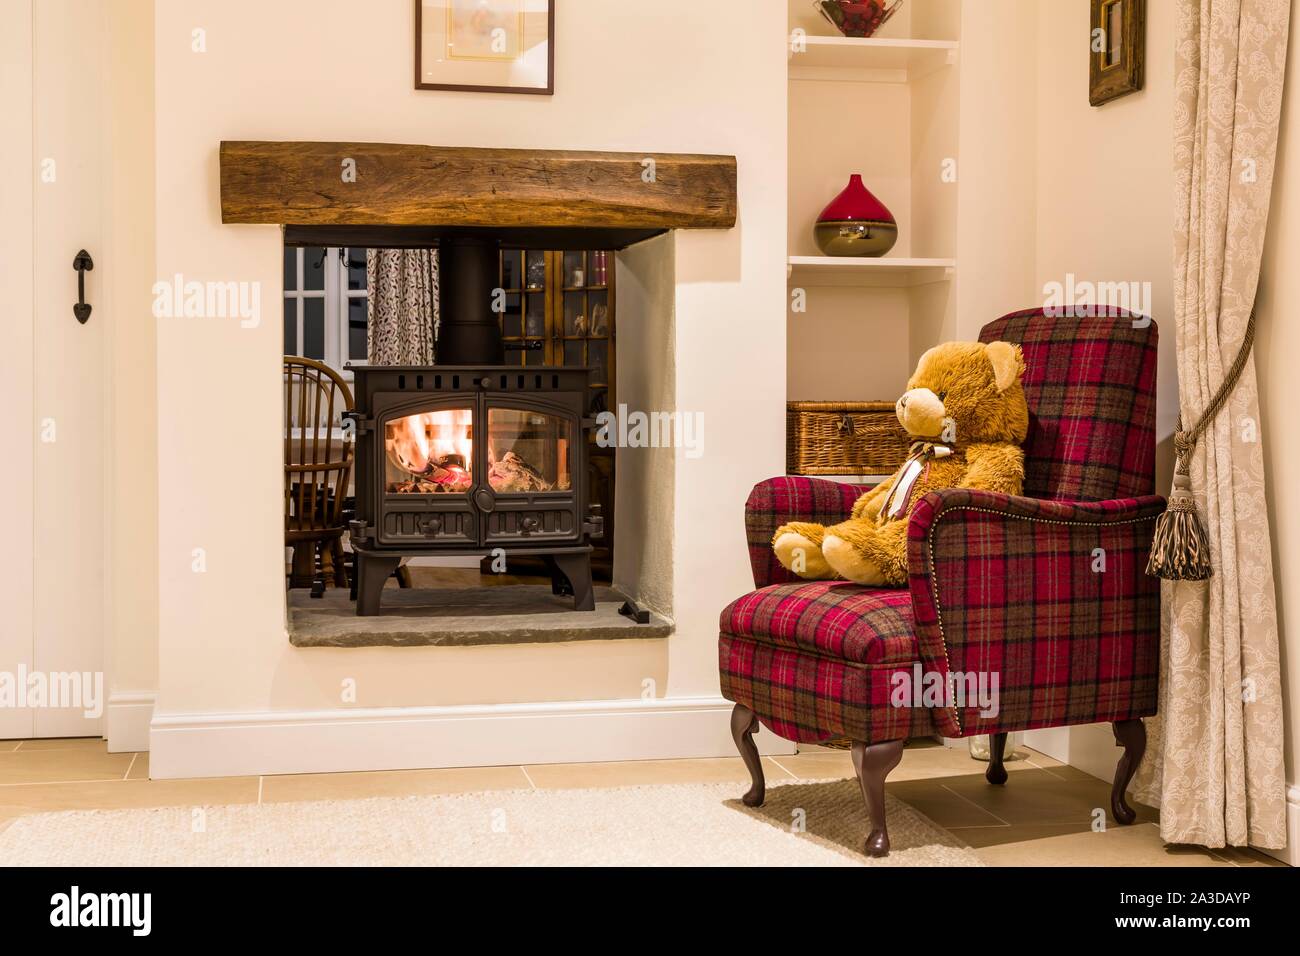 Acogedora chimenea con estufa de leña y el oso de peluche en una sala interior, REINO UNIDO Foto de stock